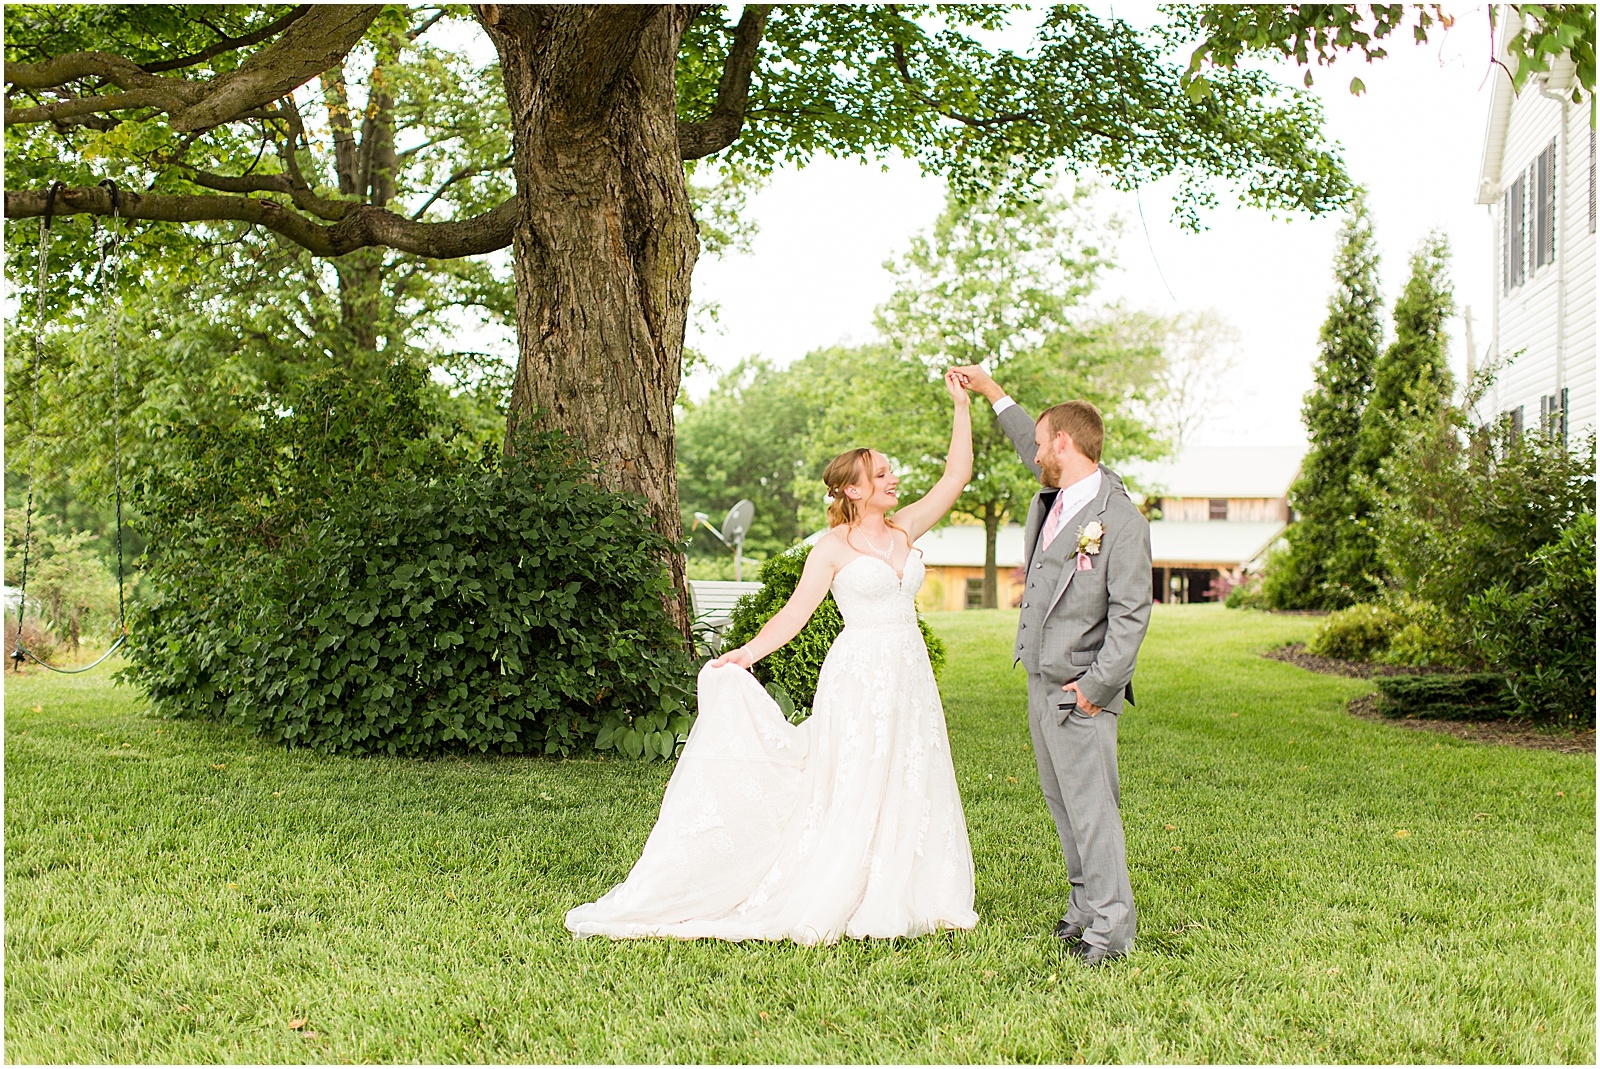 Sierra and Eddie | Wedding BlogBret and Brandie Blog | @bretandbrandie-0079.jpg